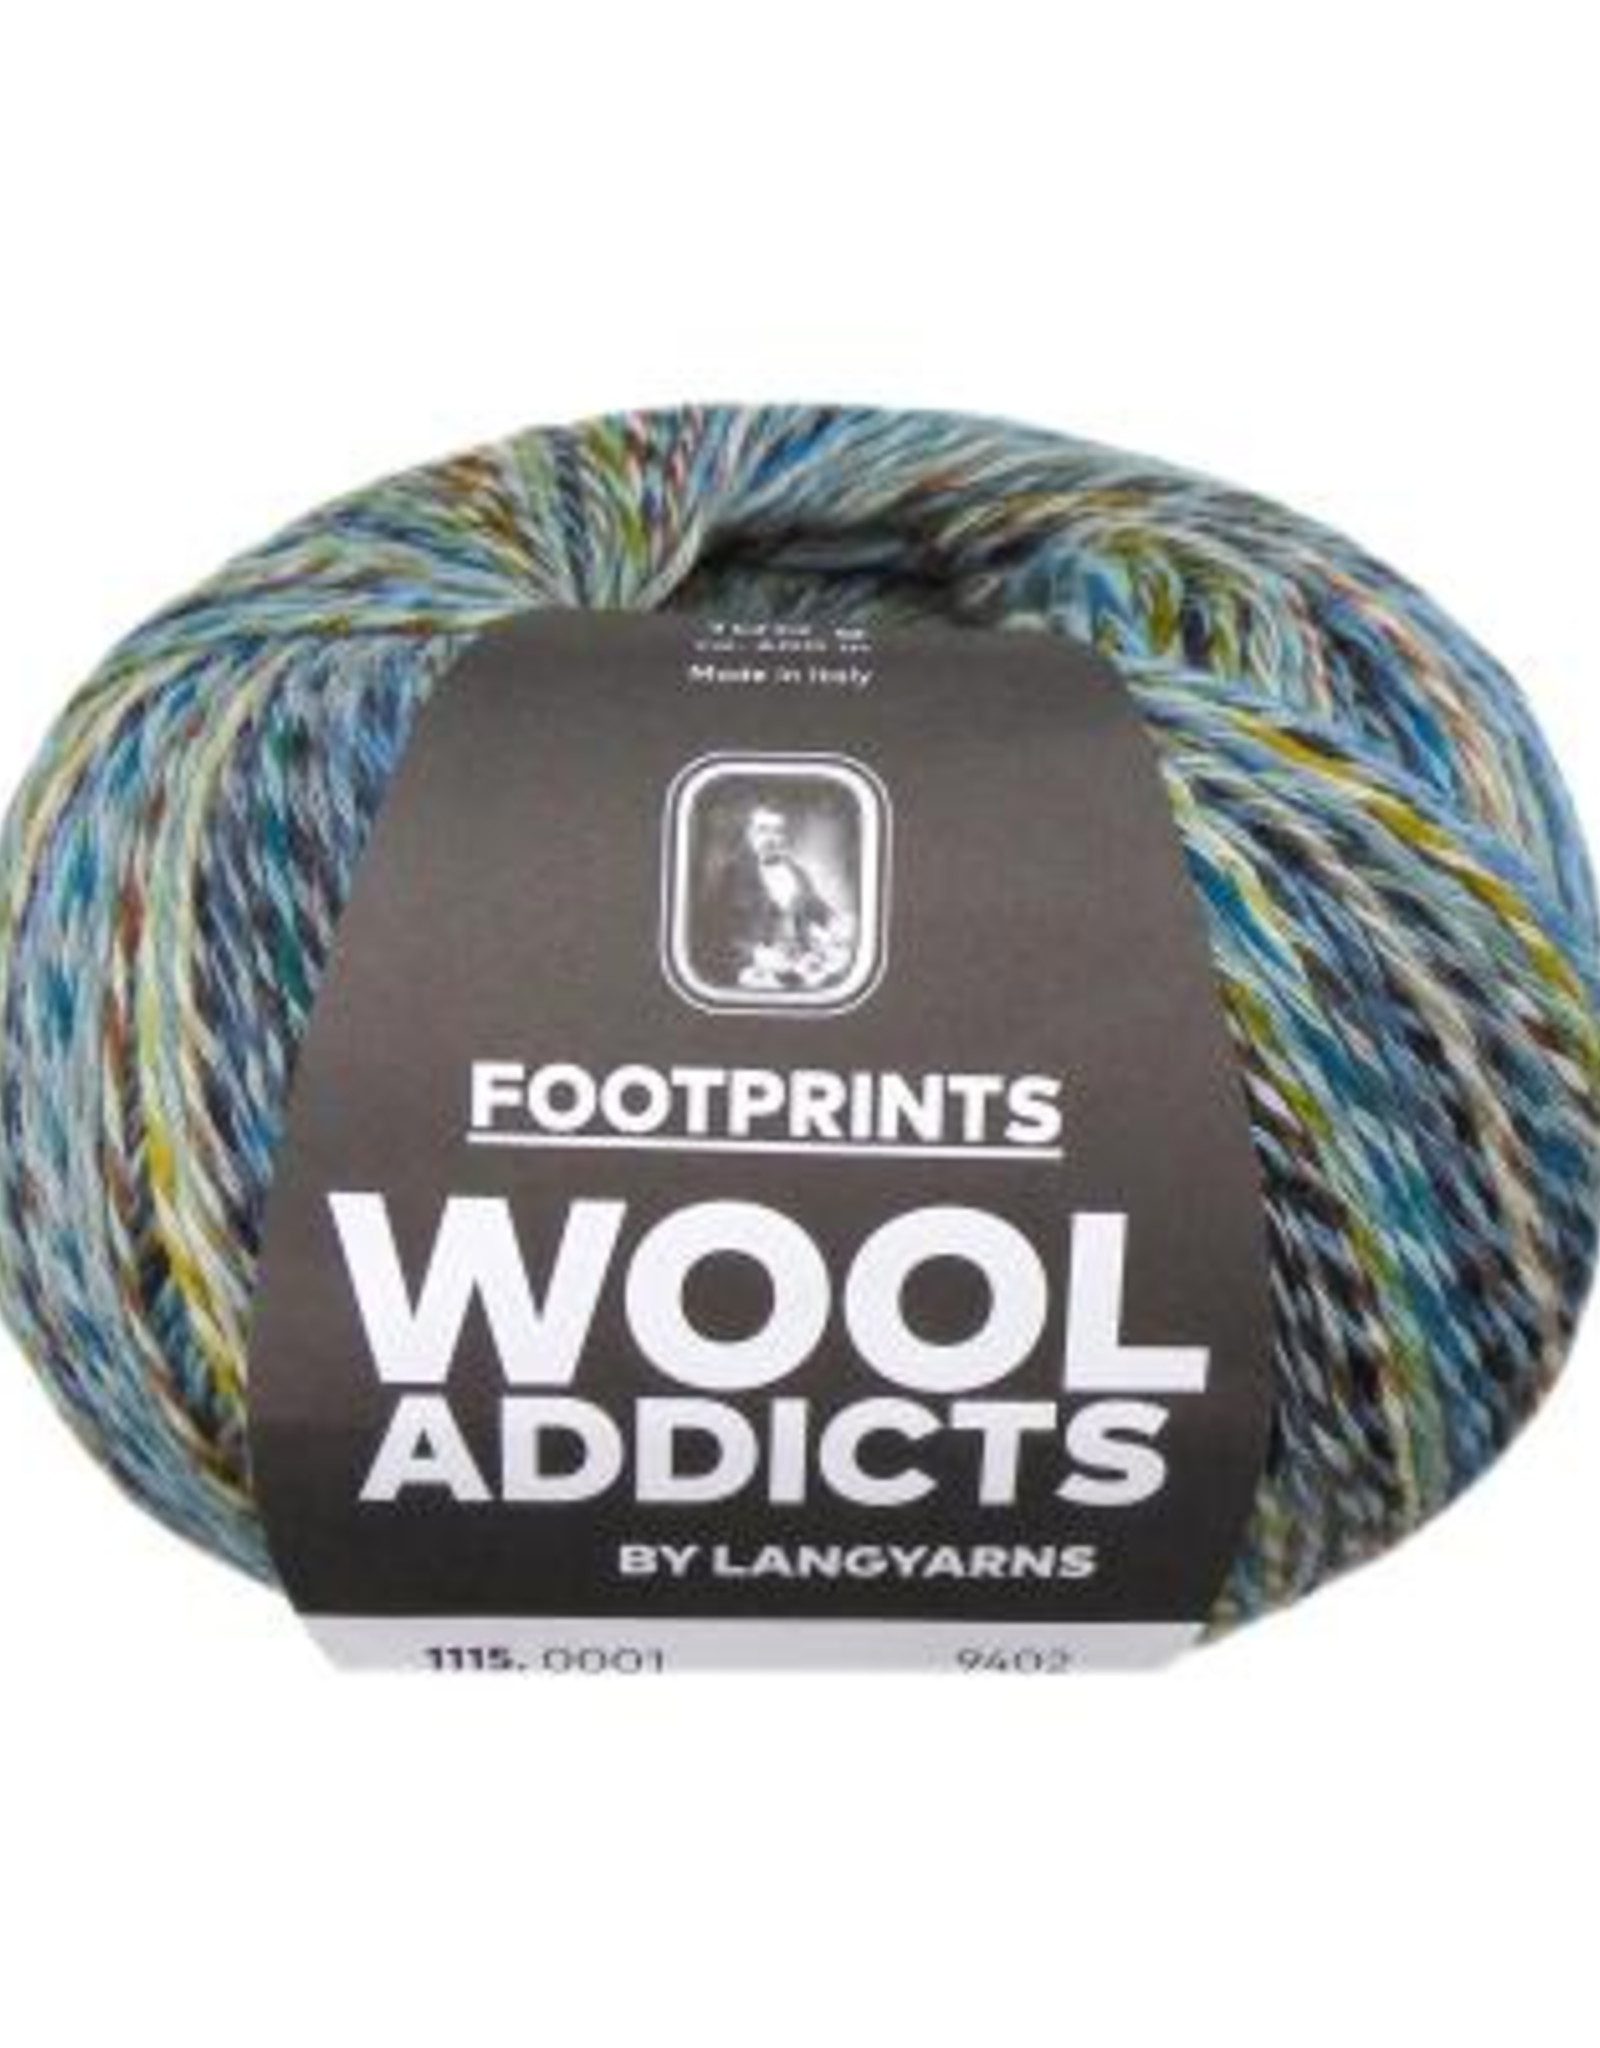 Lang Wool Addicts - Footprints